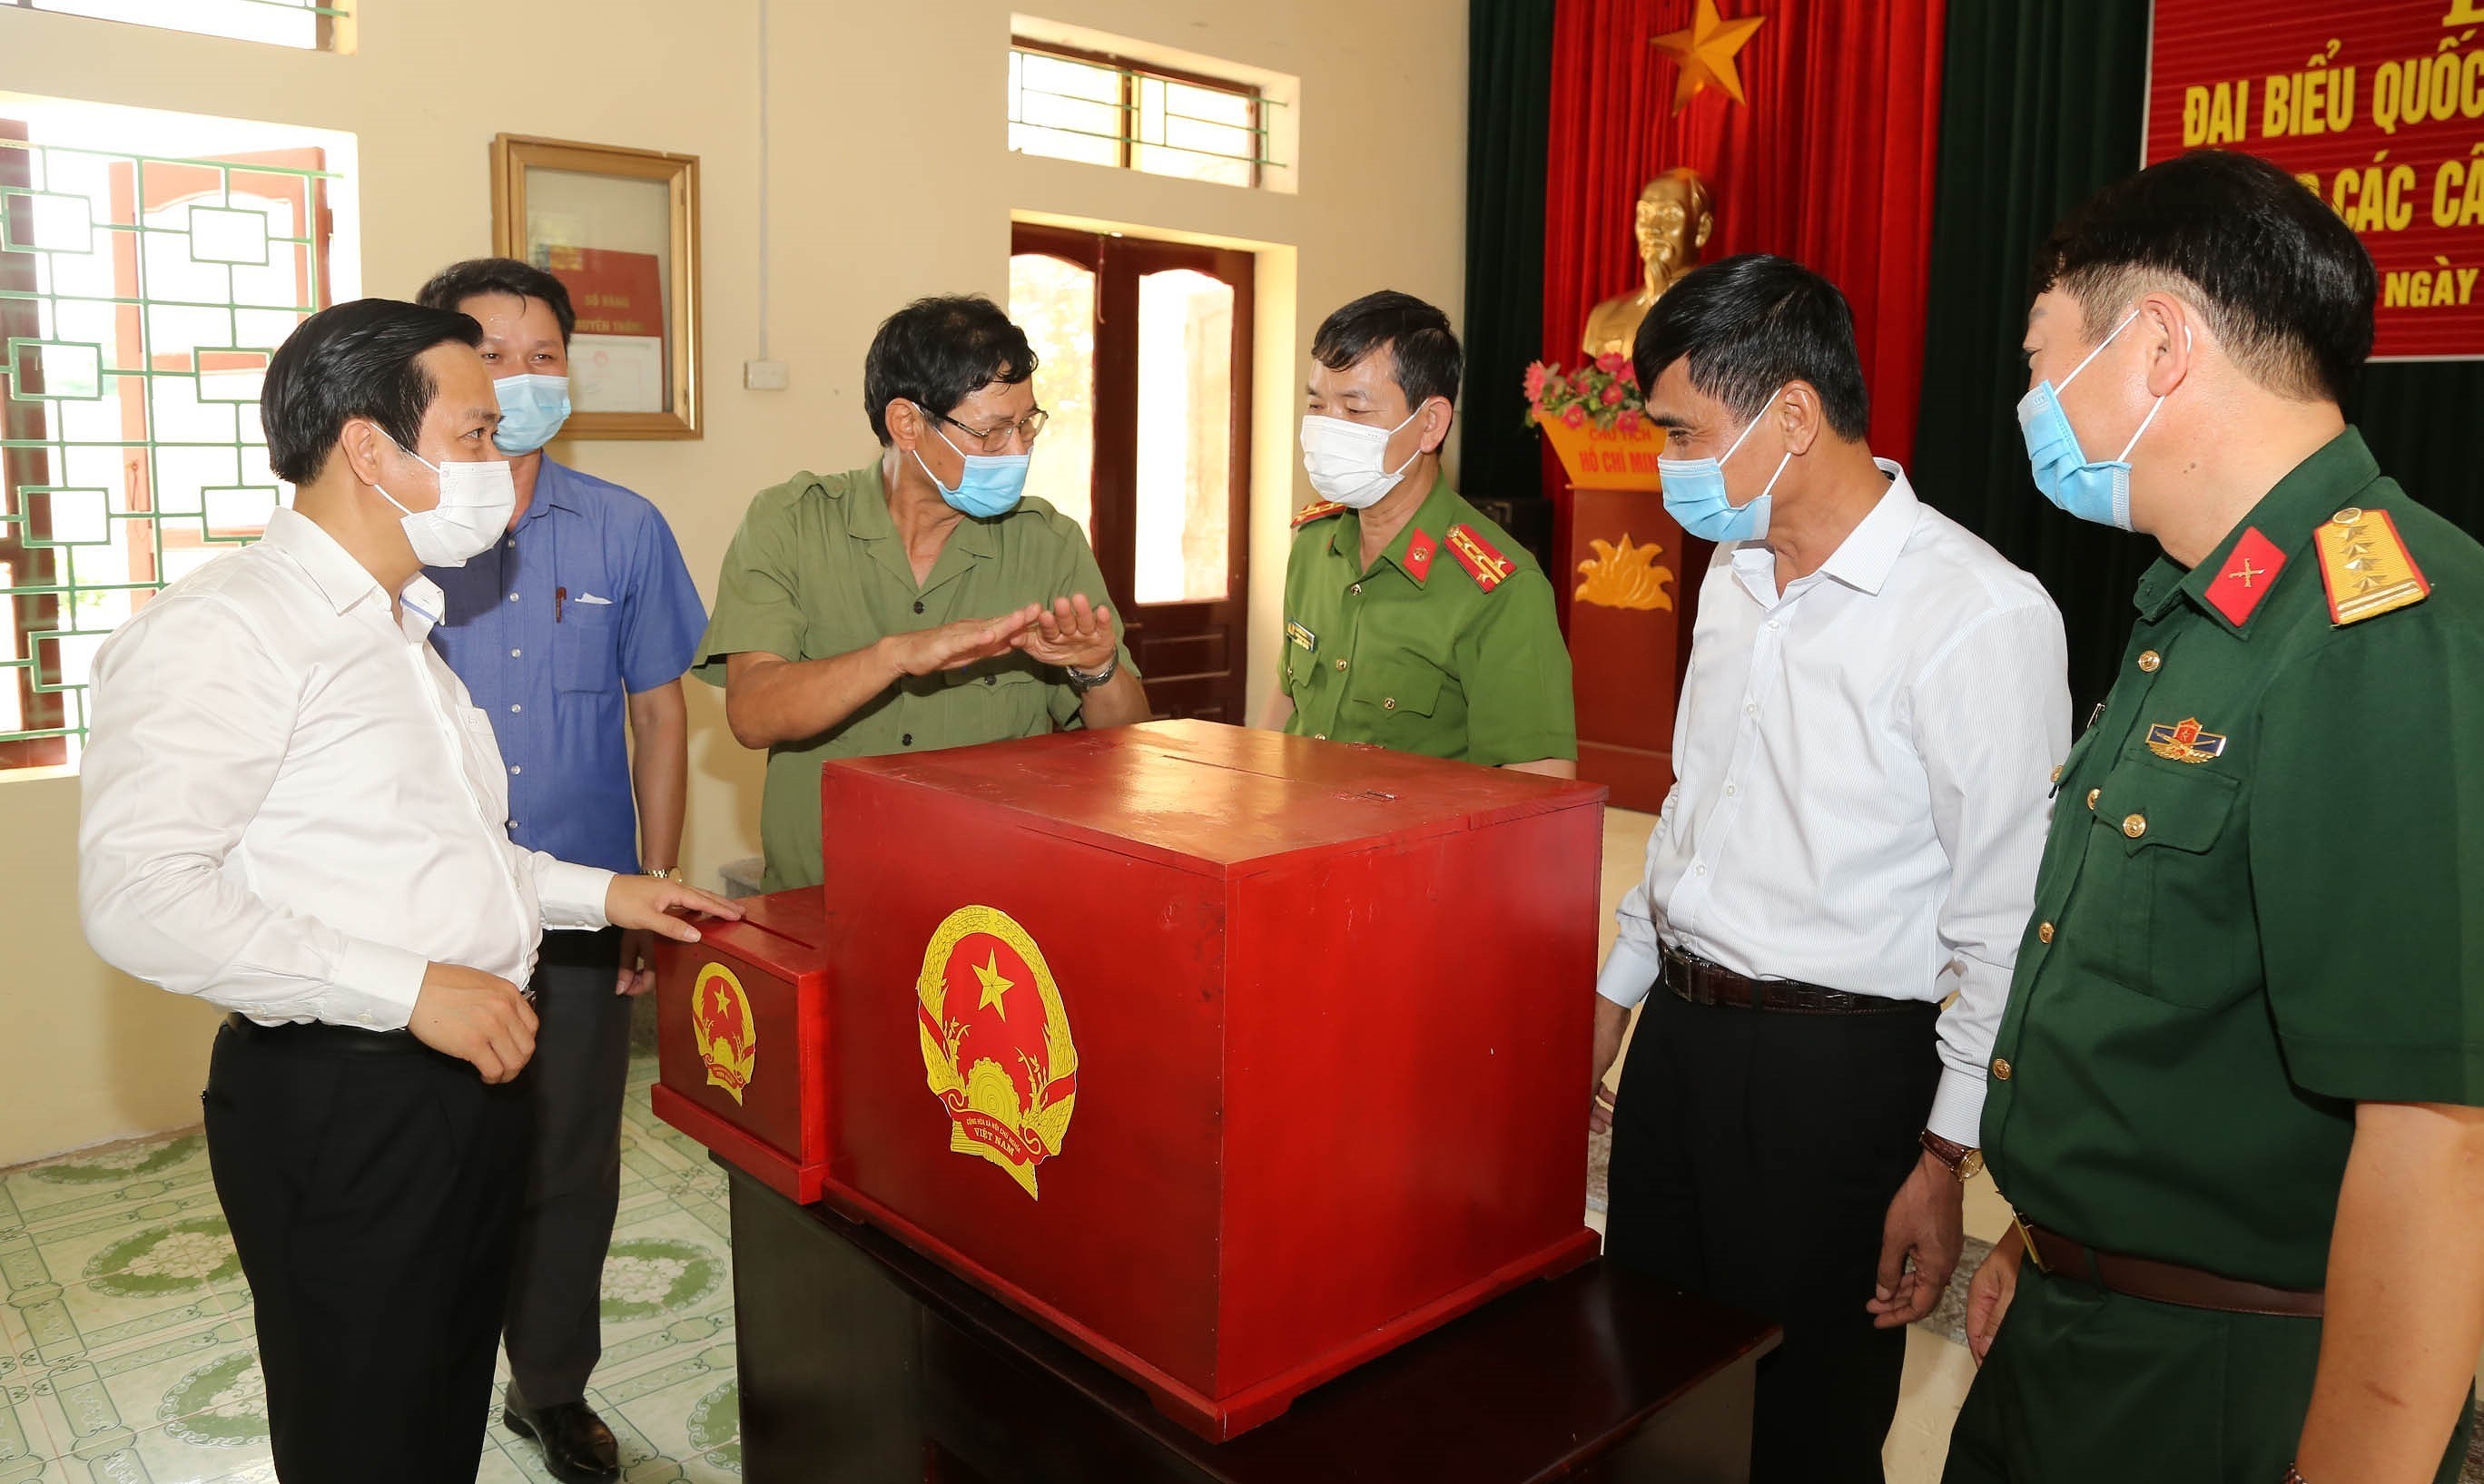 越南国会主席王廷惠主持全国换届选举工作视频会议 hinh anh 2